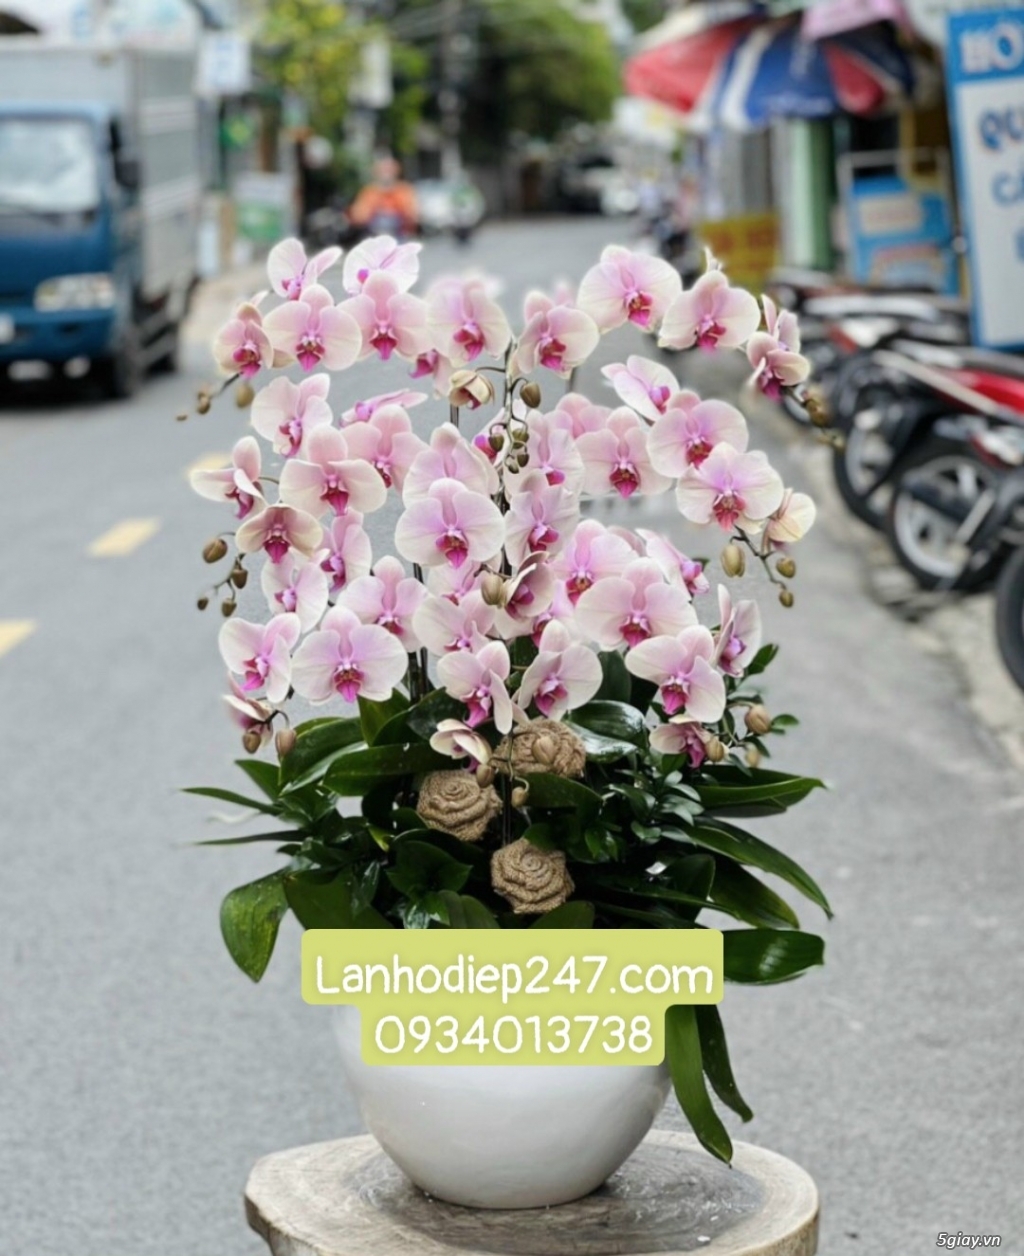 Shop hoa tươi Lan Hồ Điệp 247 tại Đức Hòa Long An 0934013738 - 13